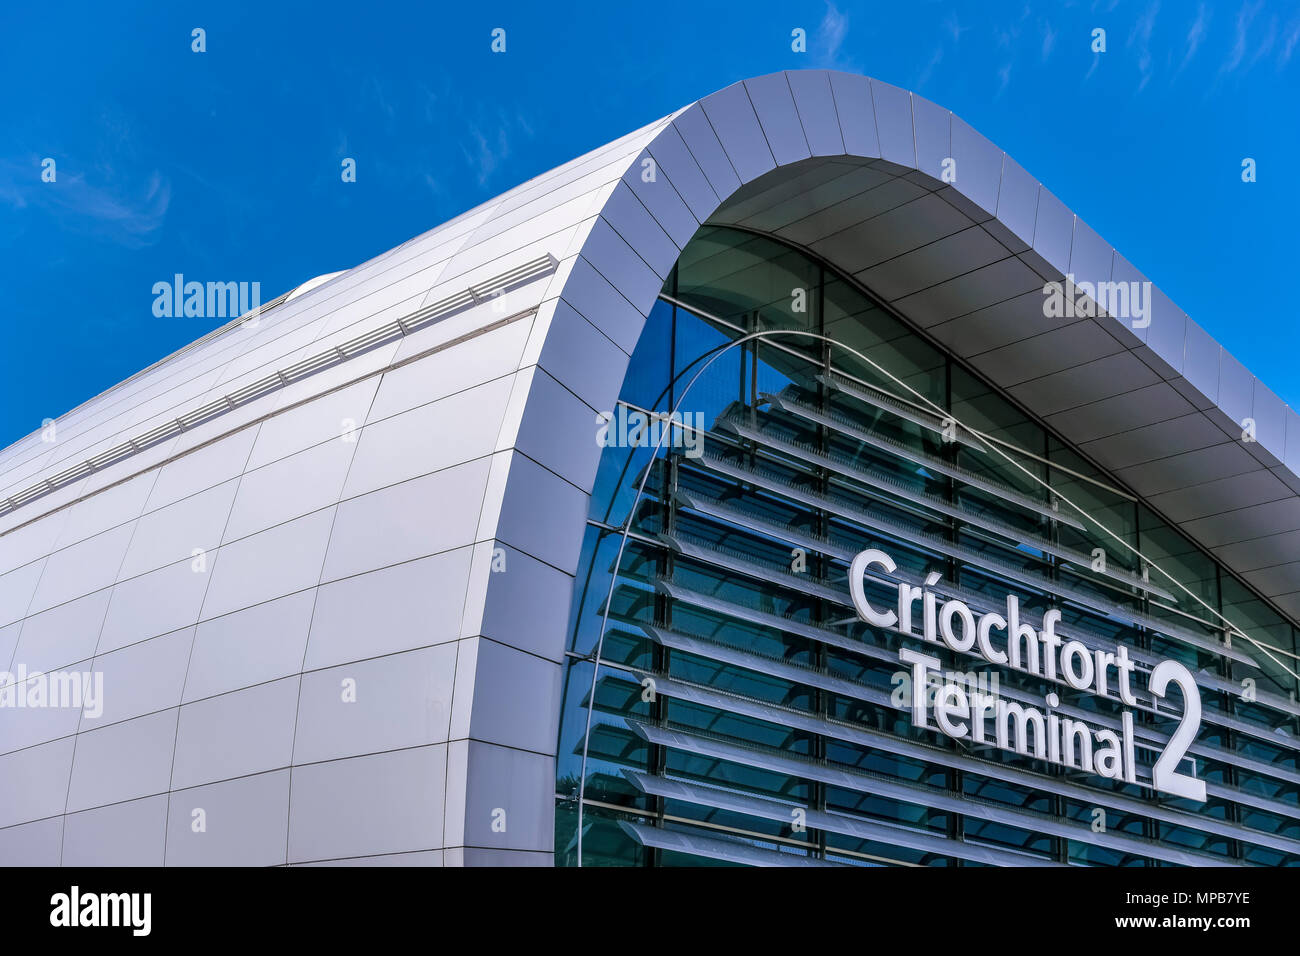 Nuovo Terminal 2, T2 Criochfort Dublino Aeroporto interenazionale DUB, dagli architetti Pascall & Watson. Cielo blu, spazio copia, primo piano. Irlanda, Europa, UE. Foto Stock